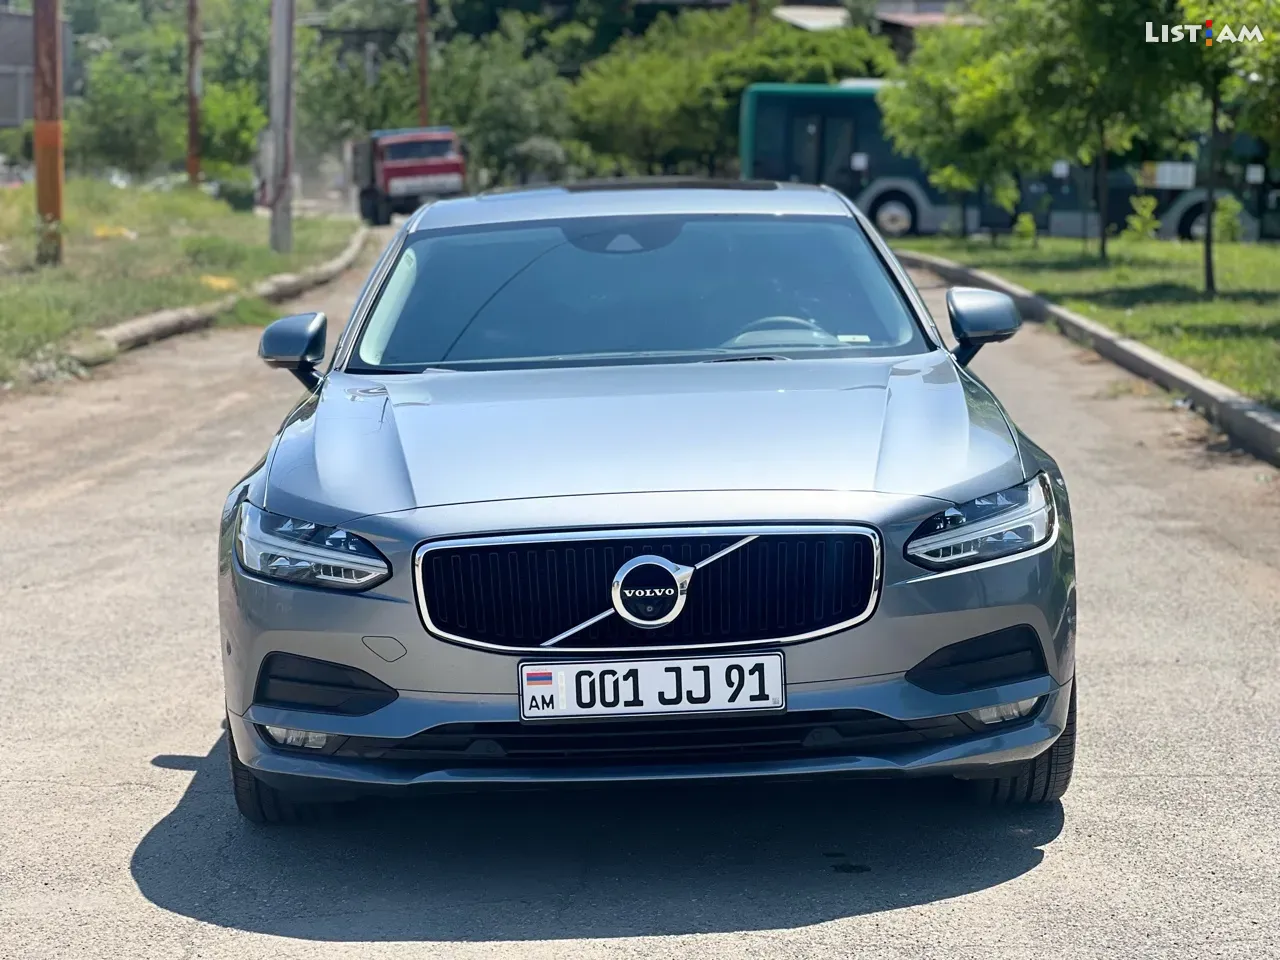 Volvo S90, 2.0 լ, լիաքարշ, 2017 թ. - Ավտոմեքենաներ - List.am